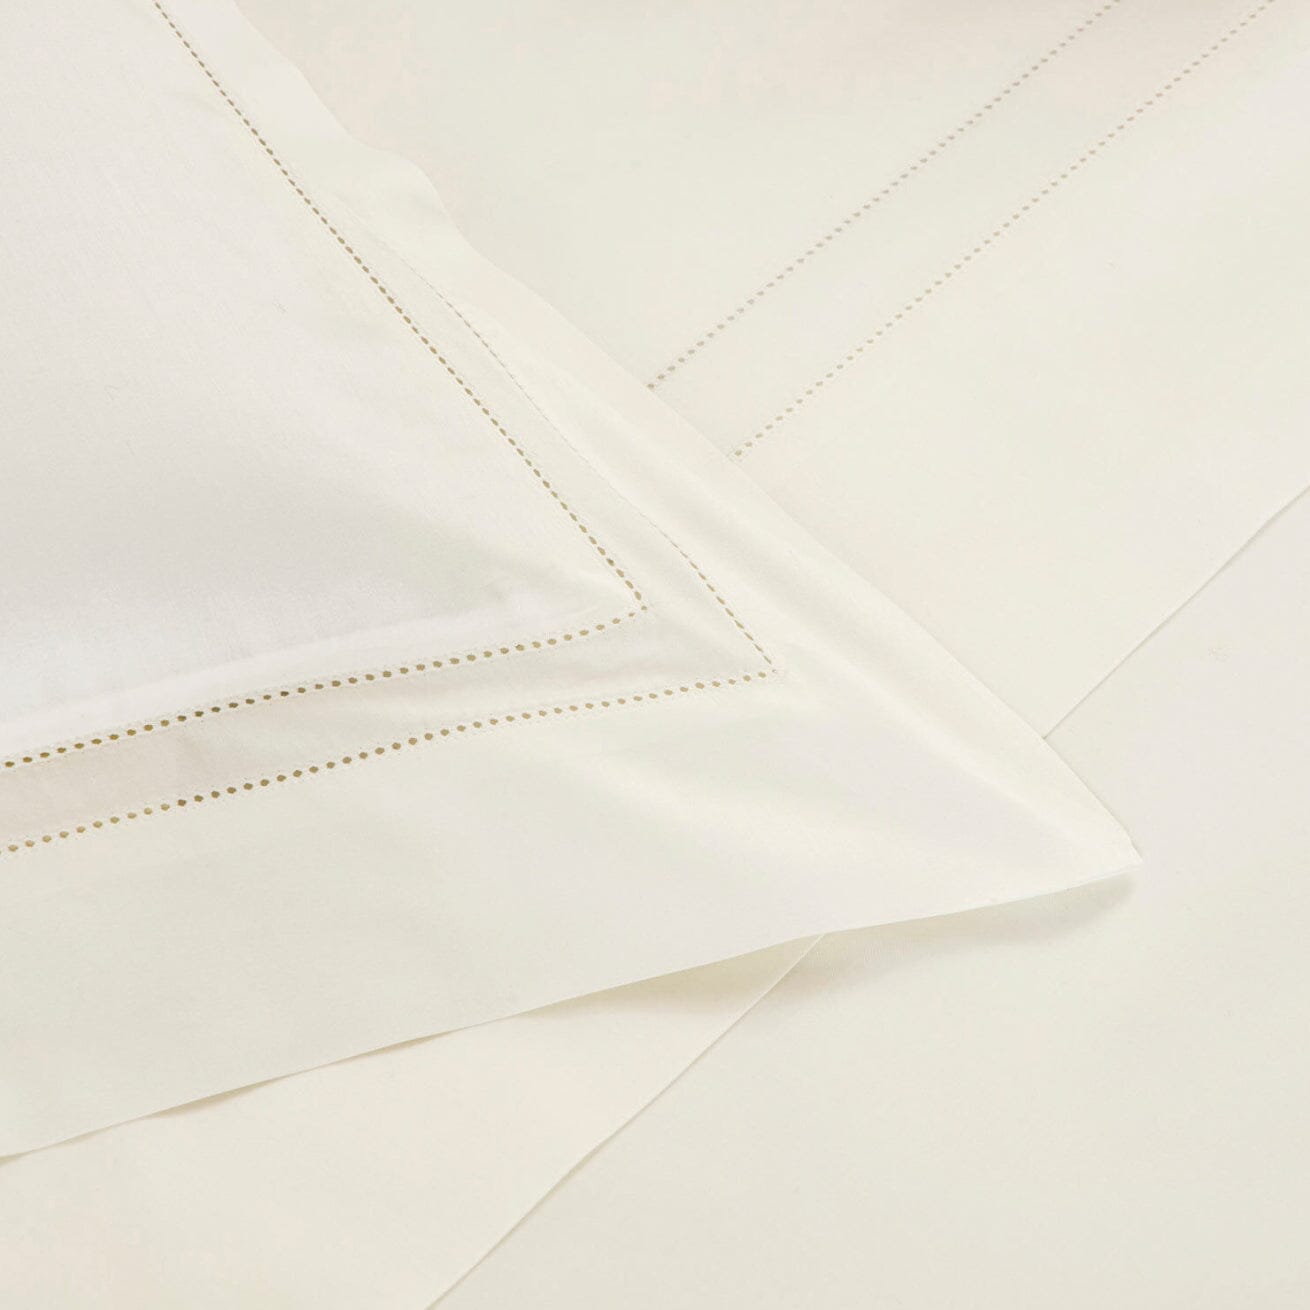 Frette - Doppio Ajour Detail of Pillow Sham in Milk - Frette Bedding at Fig linens and home